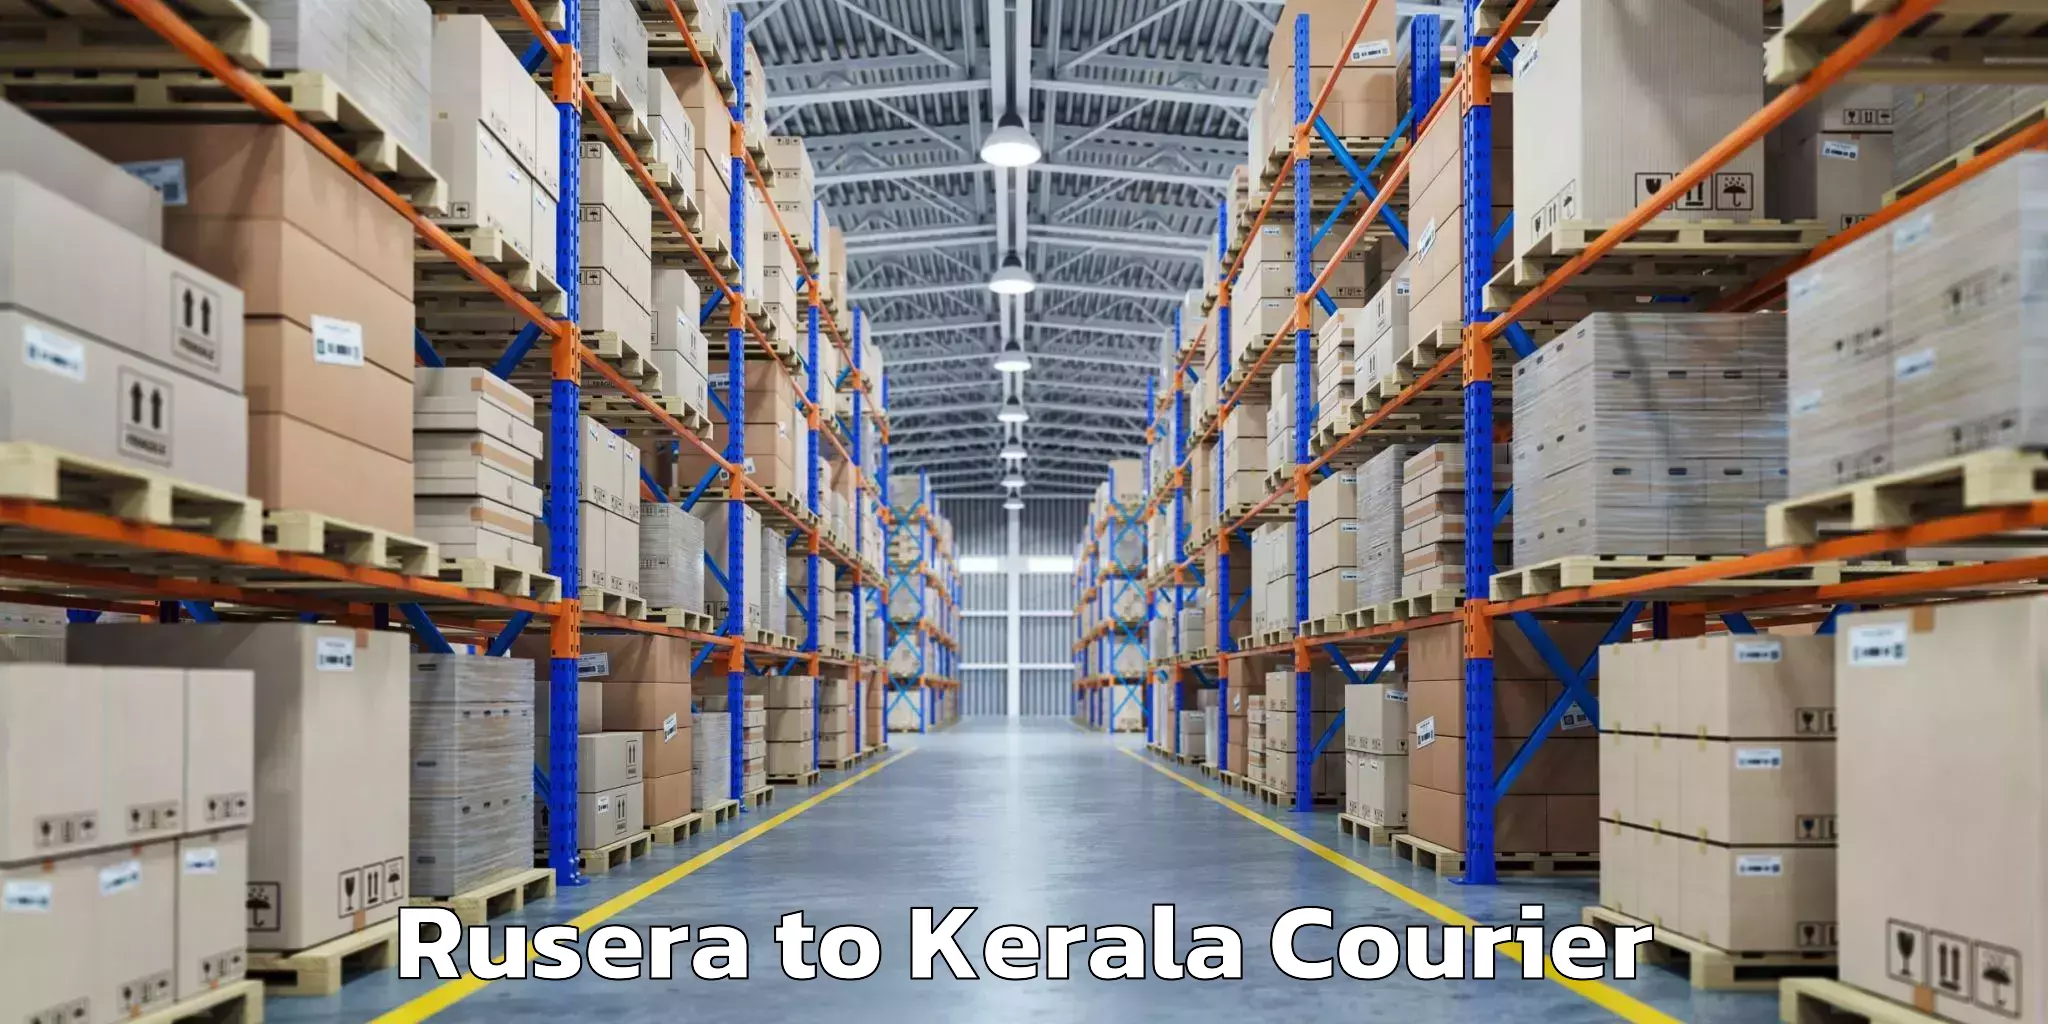 Hassle-free luggage shipping Rusera to Kerala